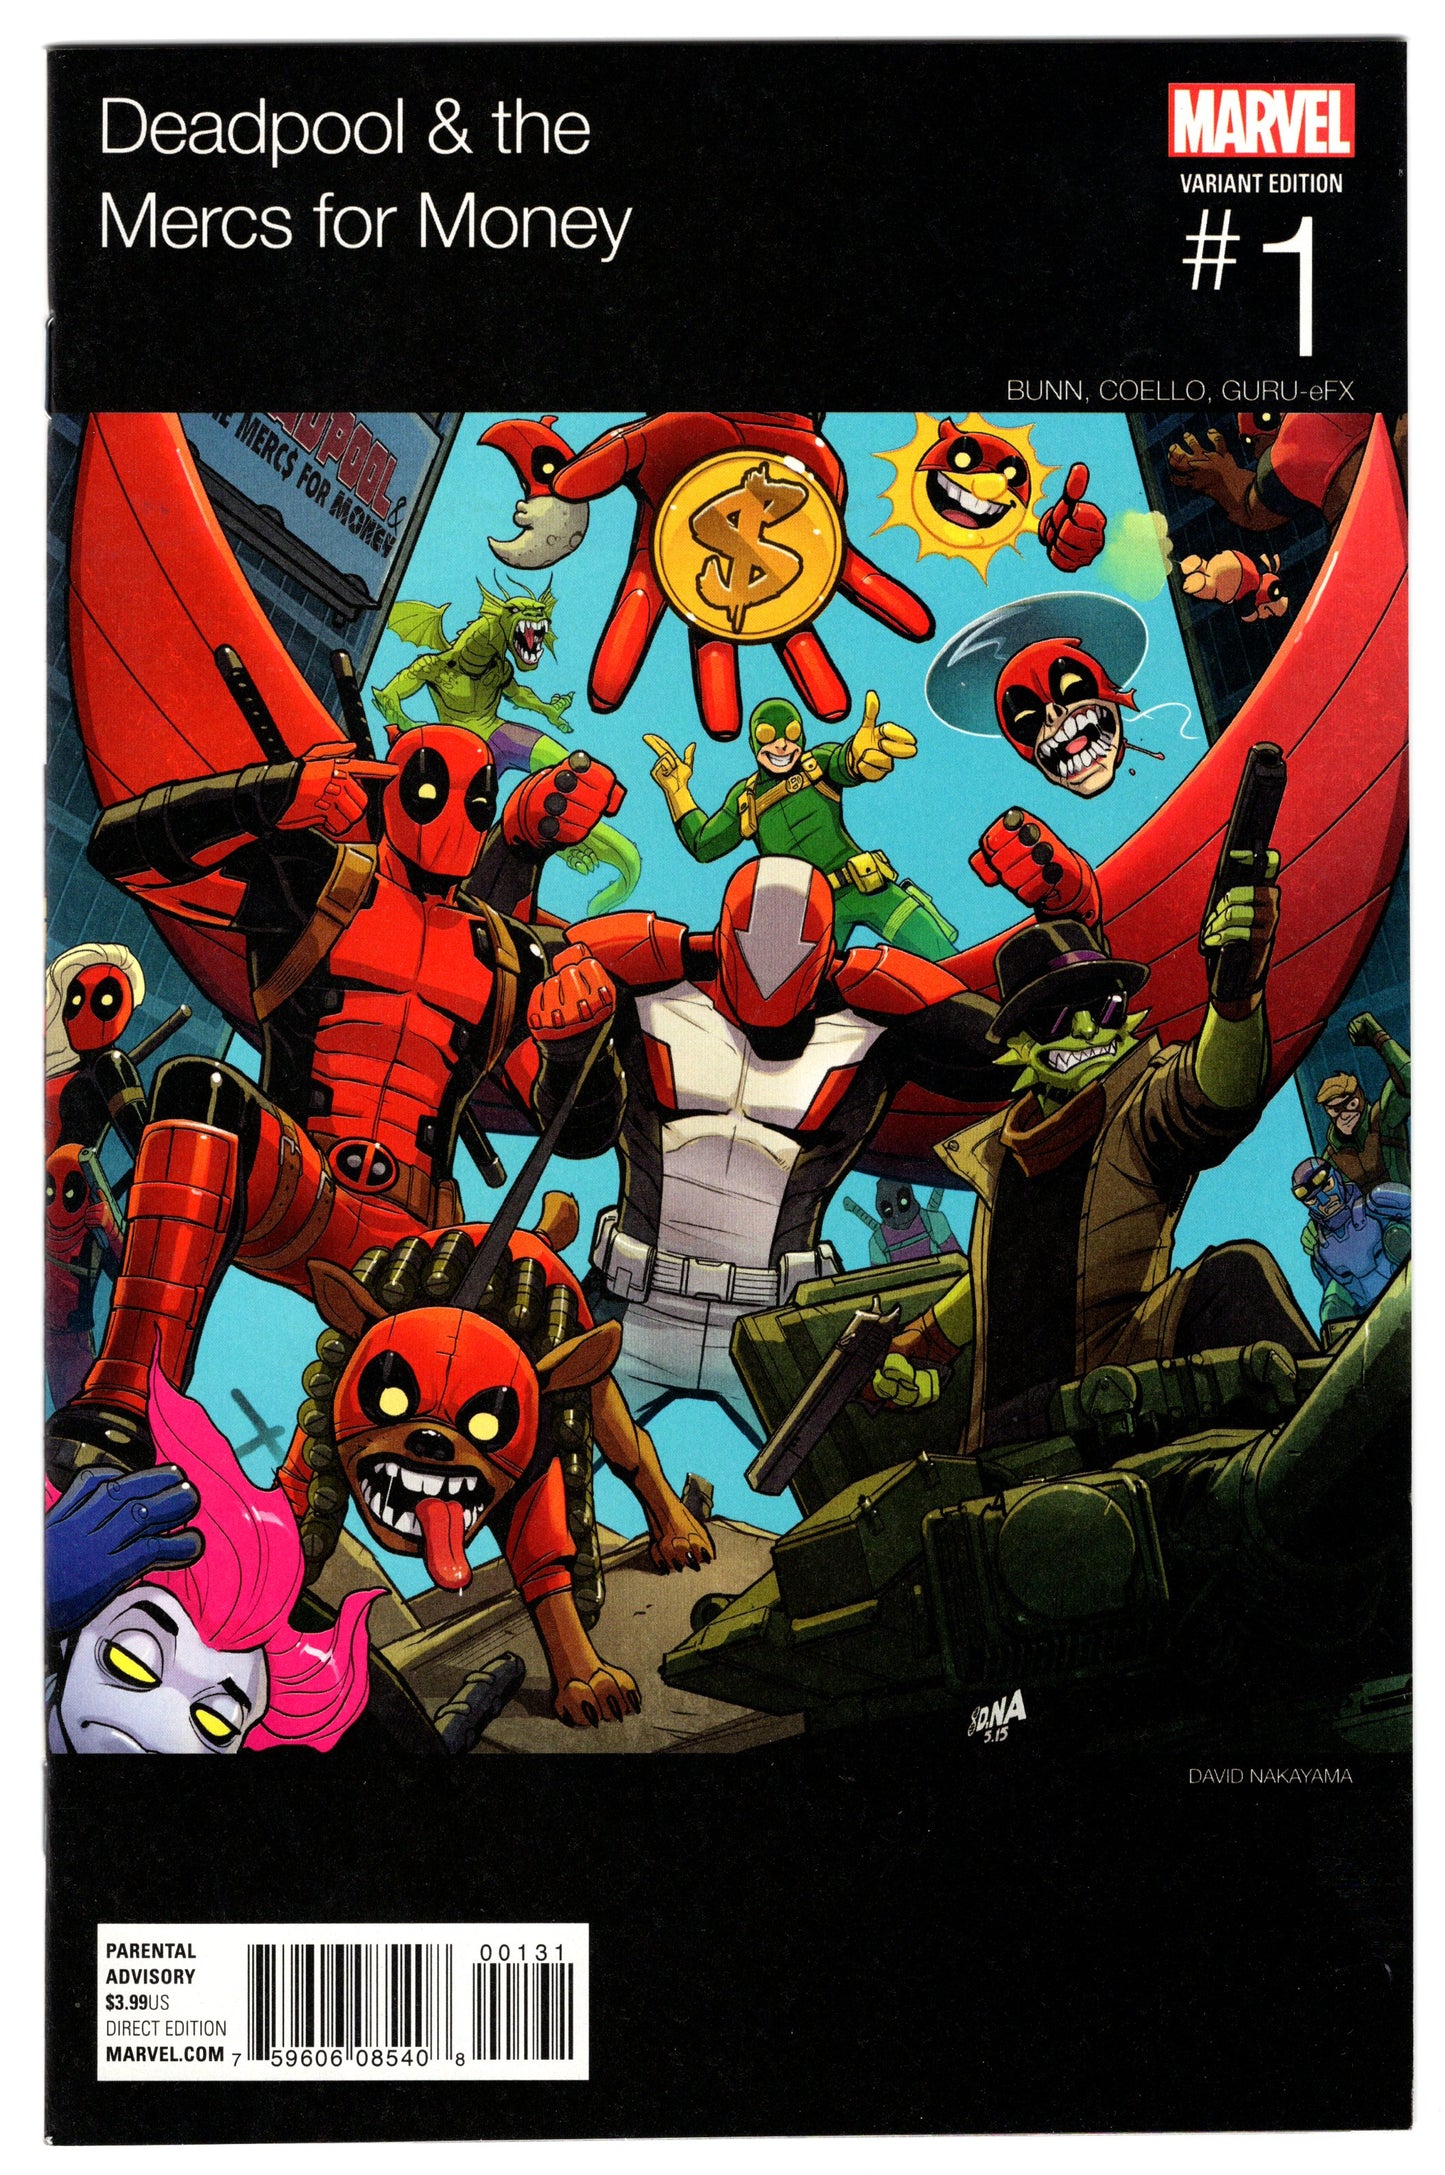 Deadpool & The Mercs for Money - Issue #1 "Variant Cover" (Sept. 2016 - Marvel Comics) NM-